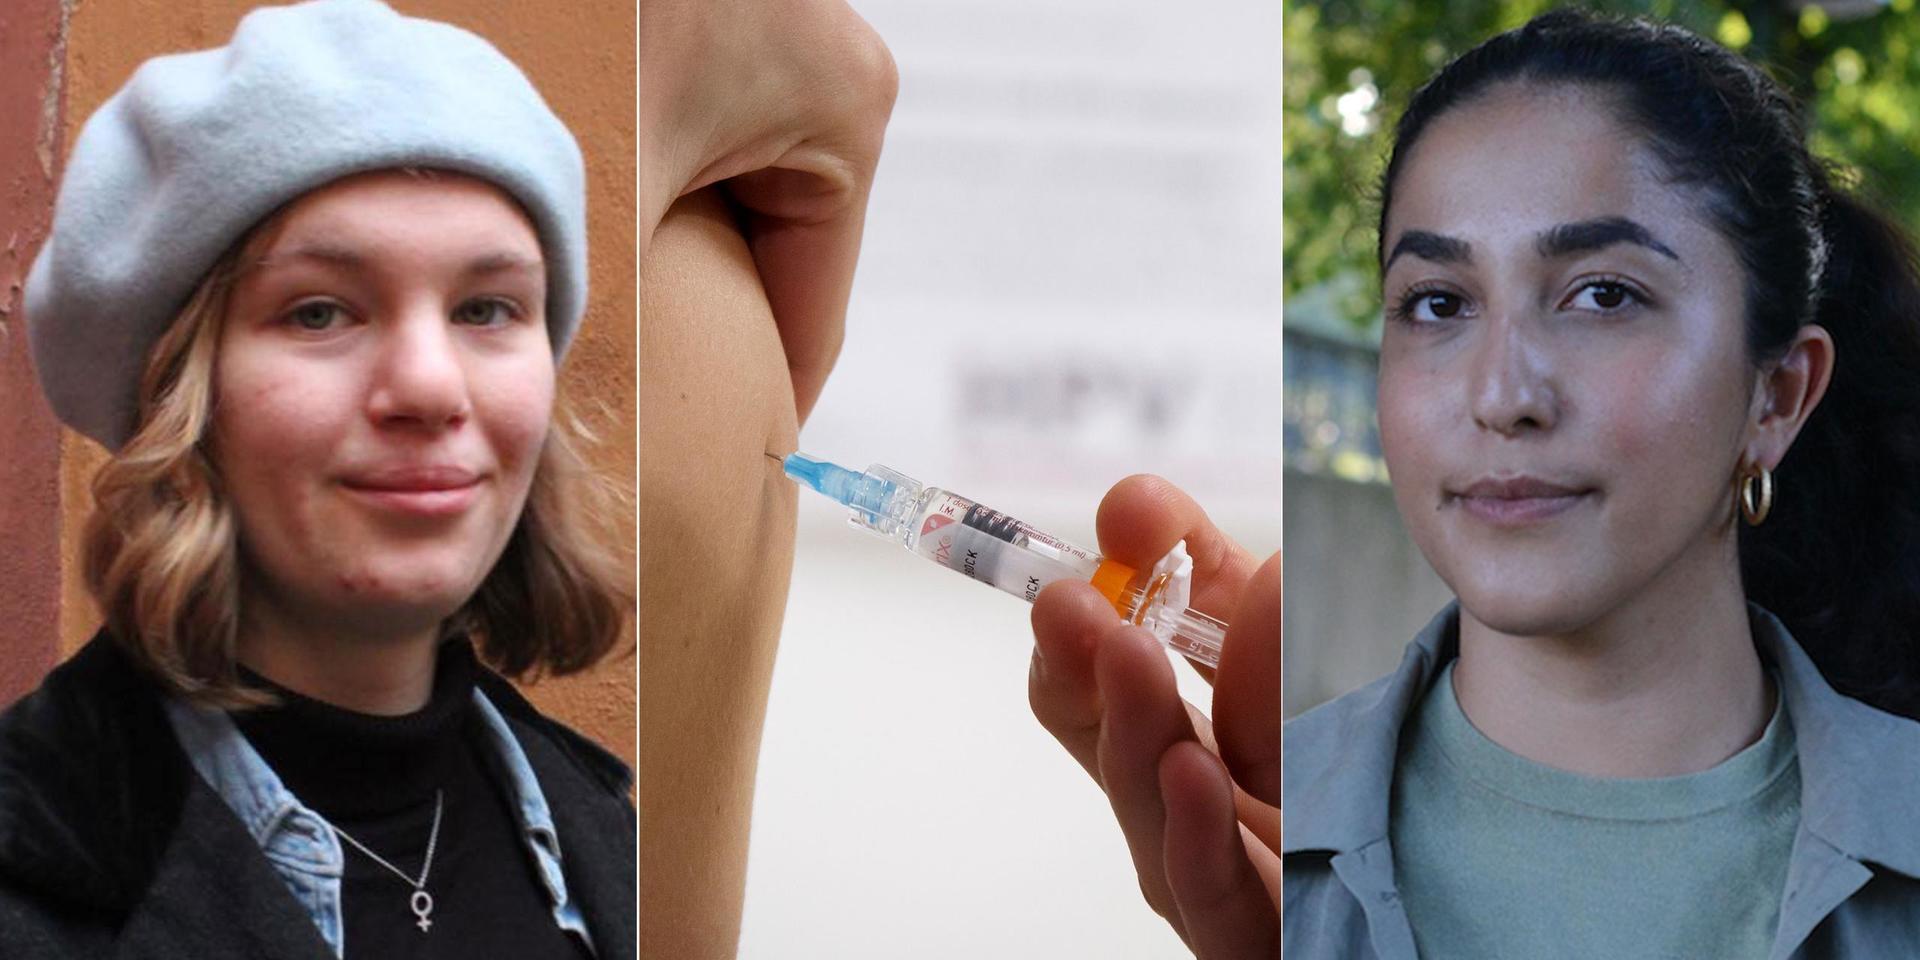 Nu kräver i att Västra Götalandsregionen ska erbjuda gratis HPV-vaccin till alla unga kvinnor upp till 26 år som är bosatta i regionen, skriver debattörerna.